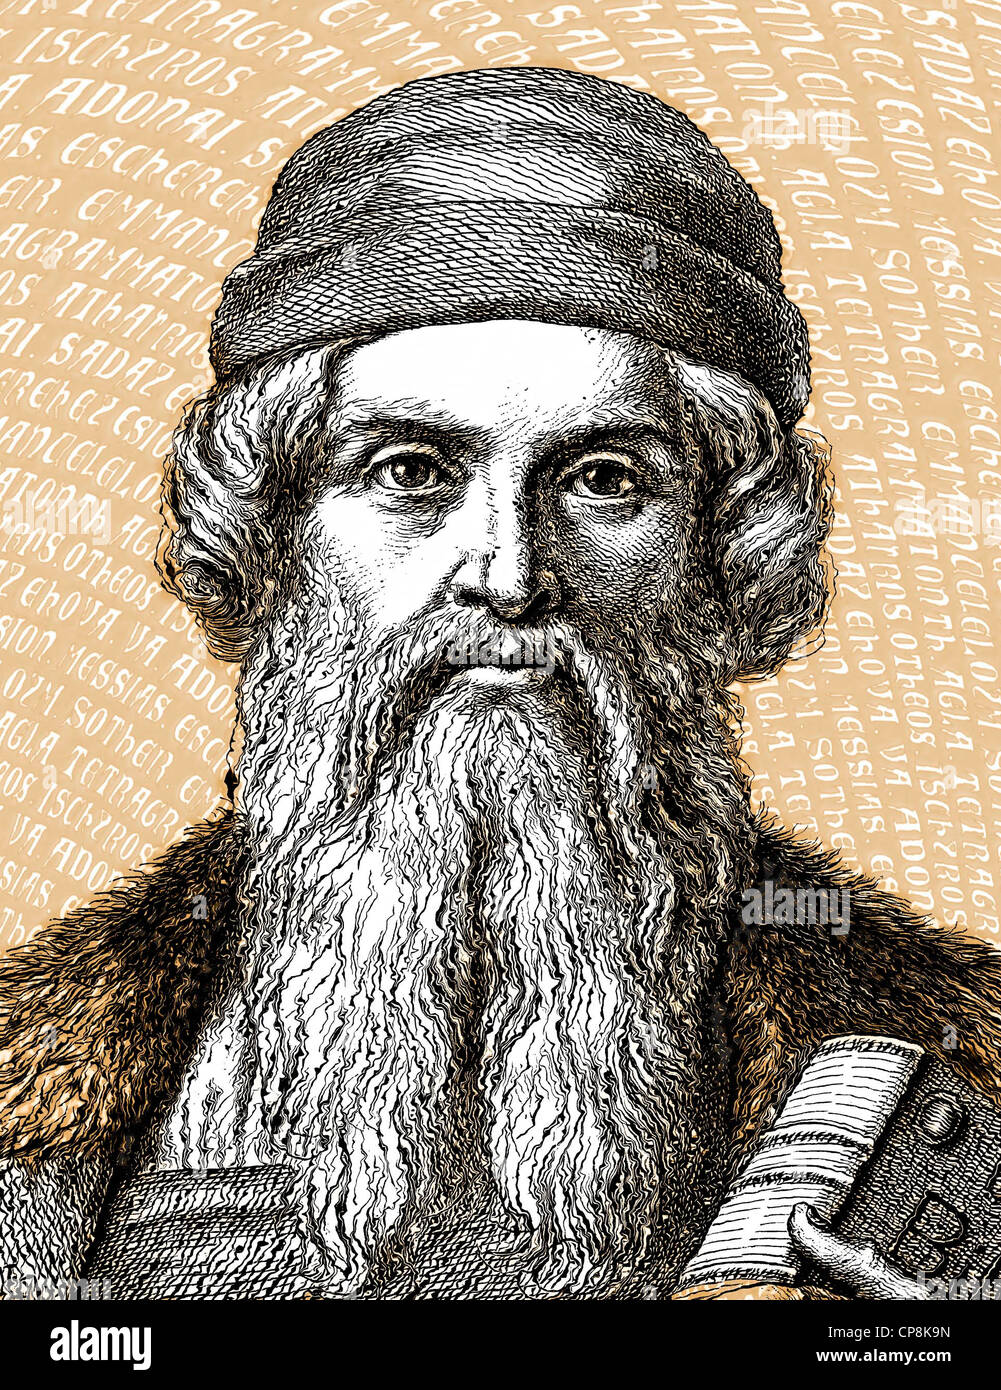 Johannes Gensfleisch Zur beladenes Zum Gutenberg, ca. 1400-1468, Erfinder des Buchdrucks mit beweglichen Metall-Typ und der Druck p Stockfoto